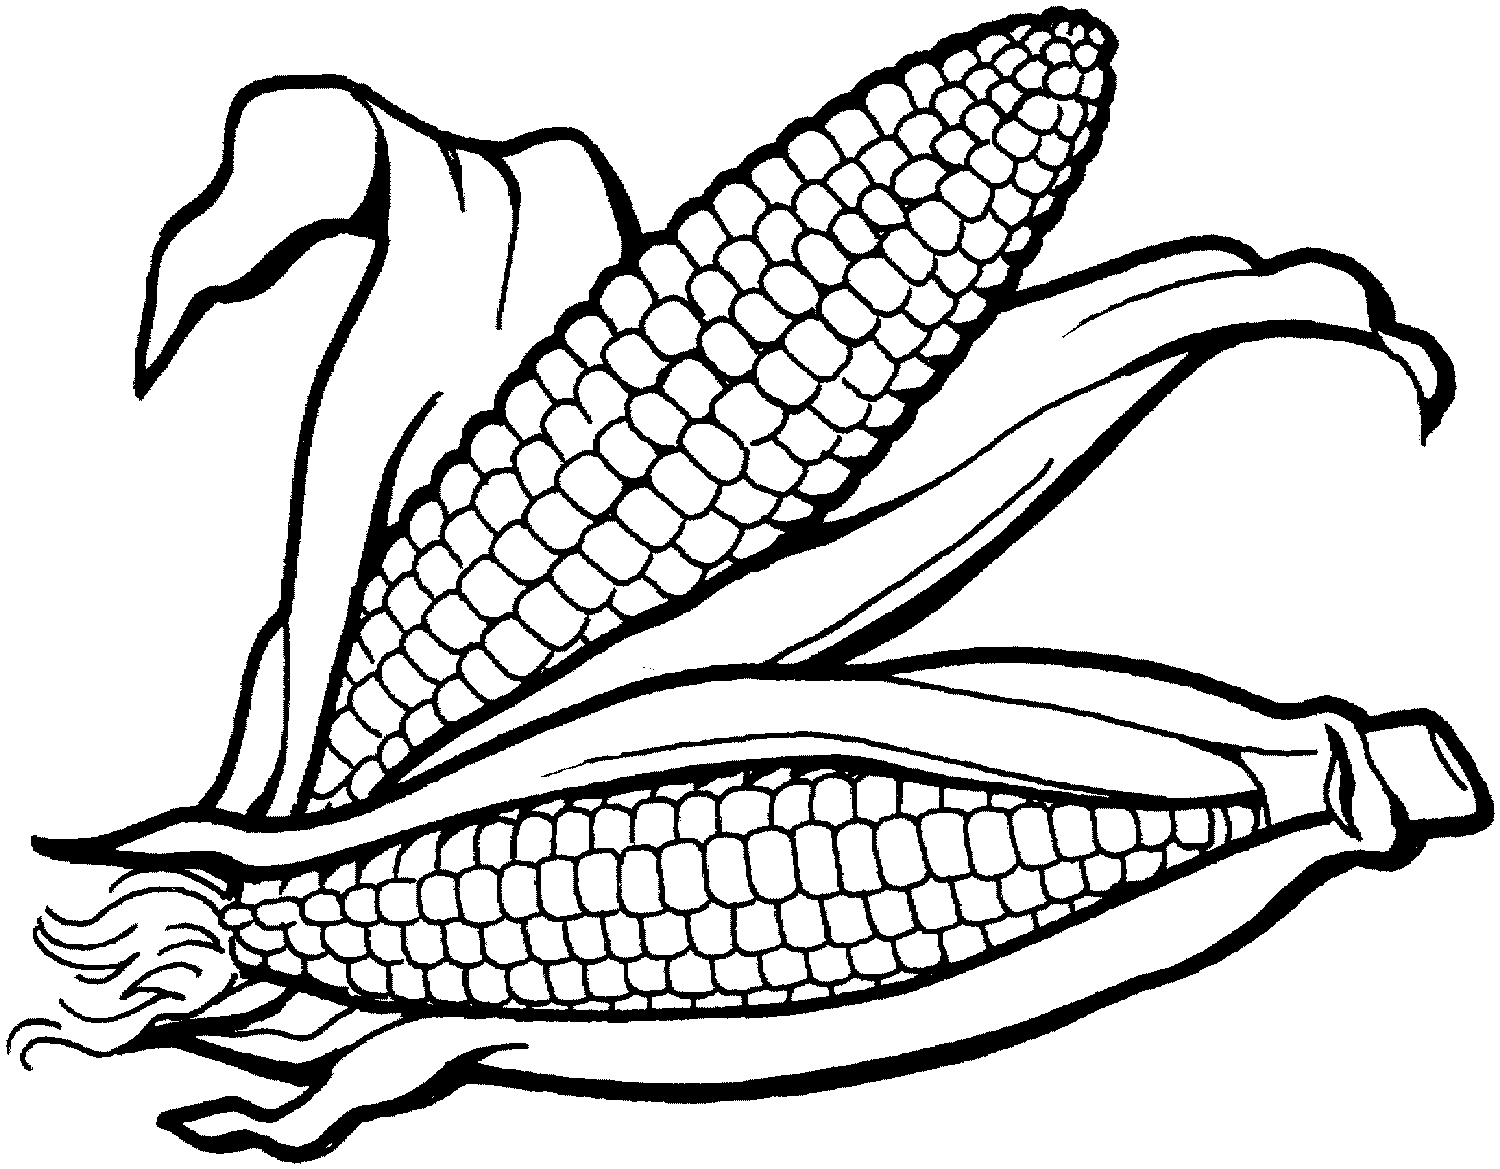 child-of-artemis: Corn Clipart Black And White